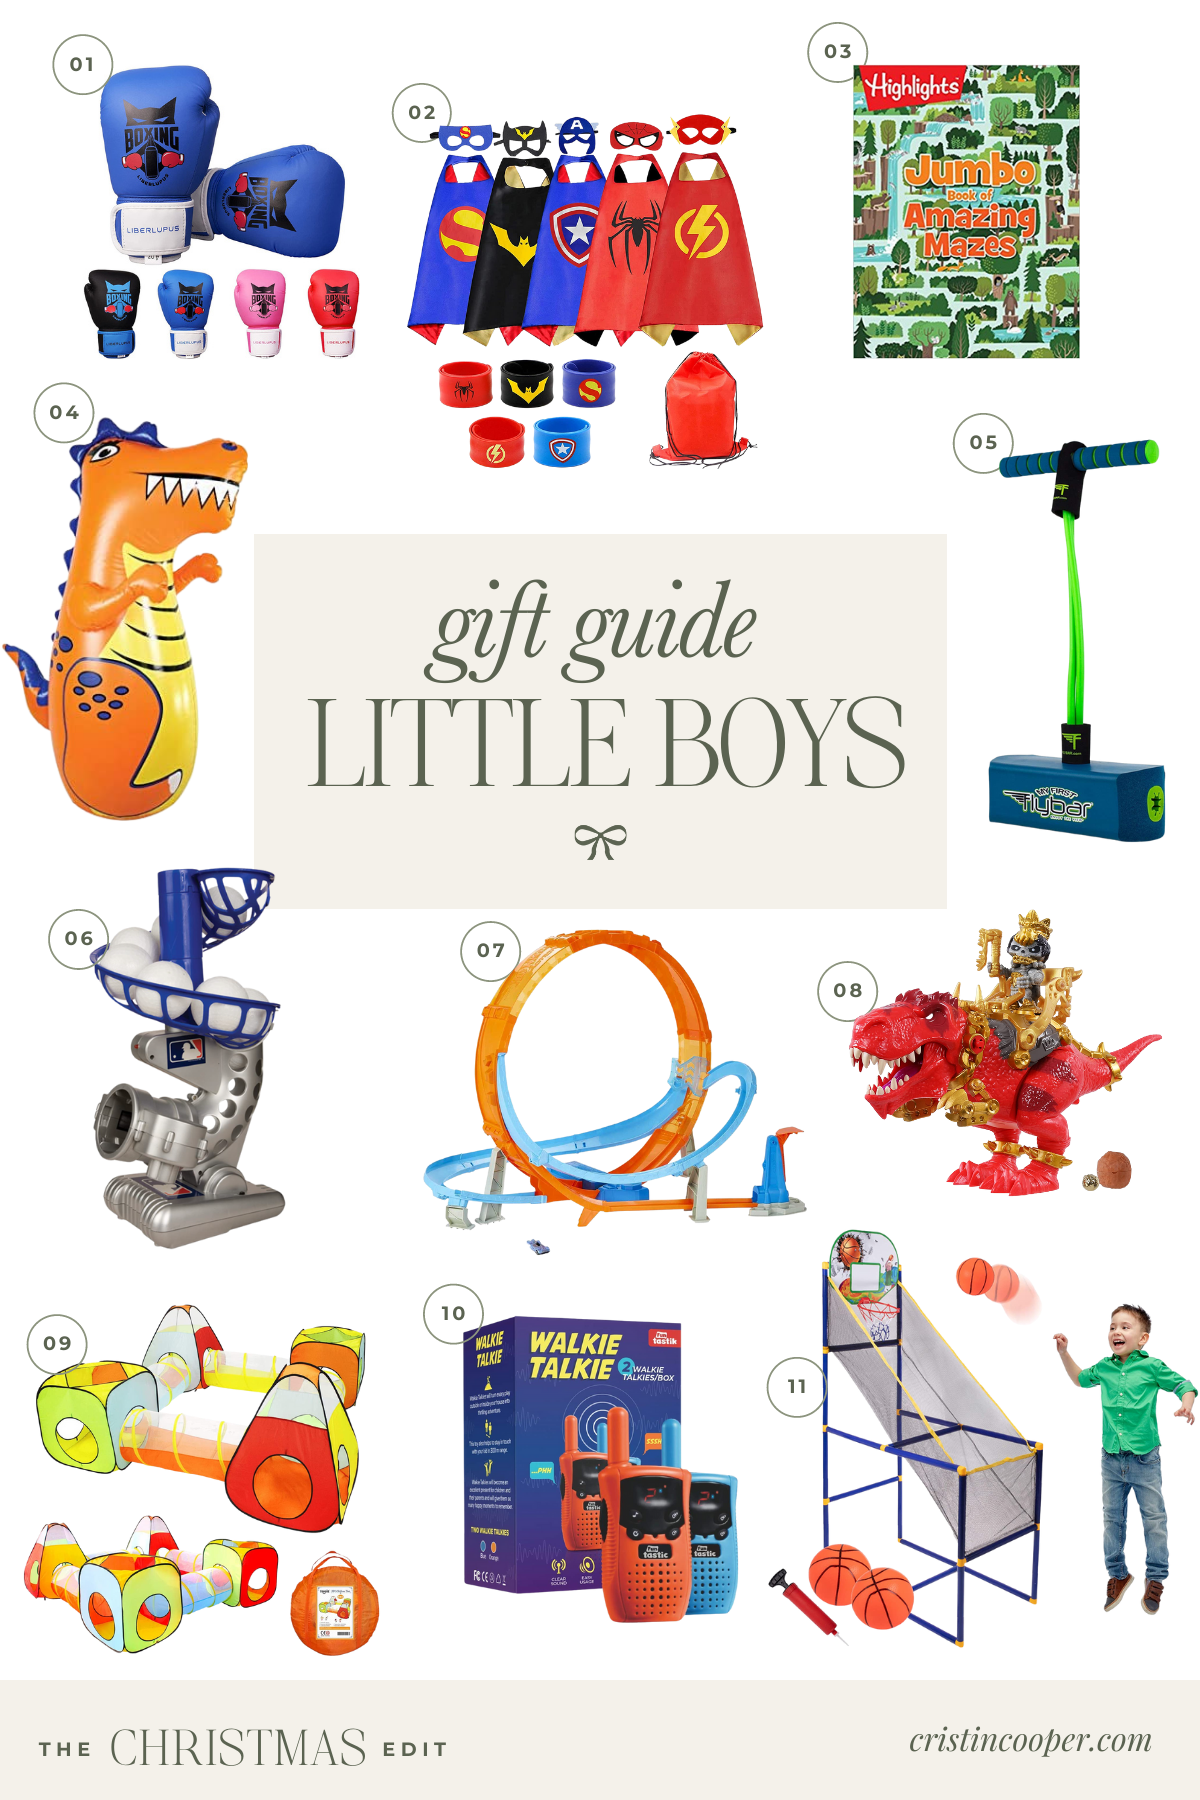 Toys for little boys